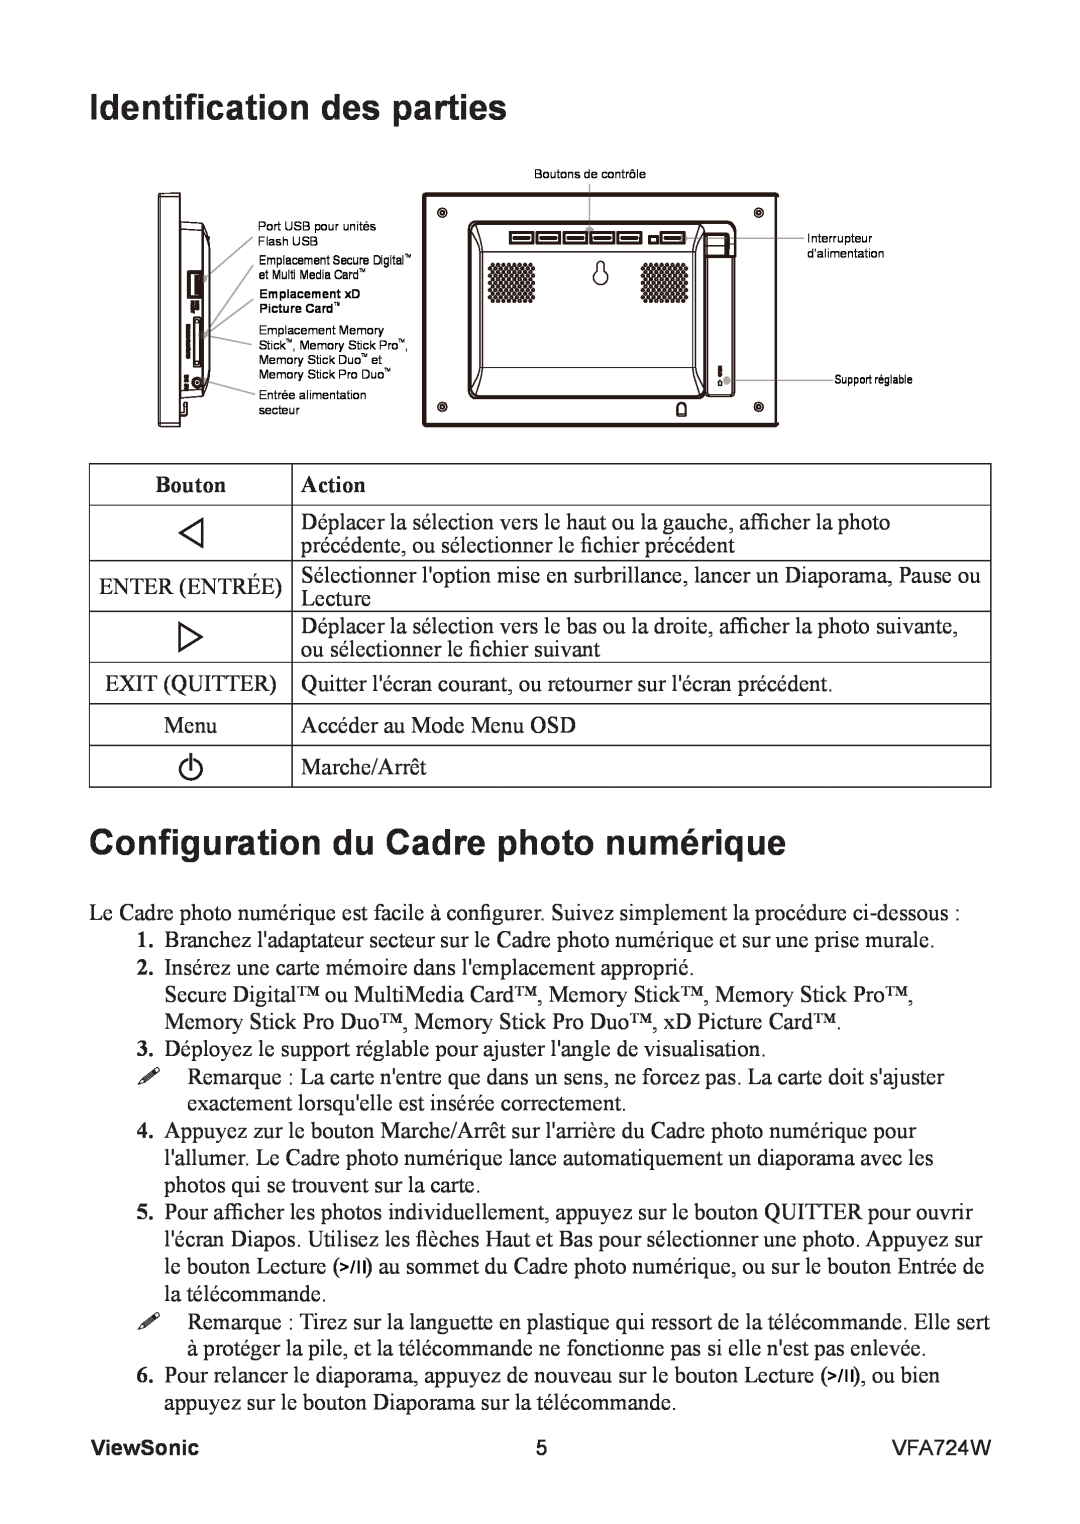 ViewSonic VFA724W manual Identification des parties, Configuration du Cadre photo numérique, Bouton, Action 